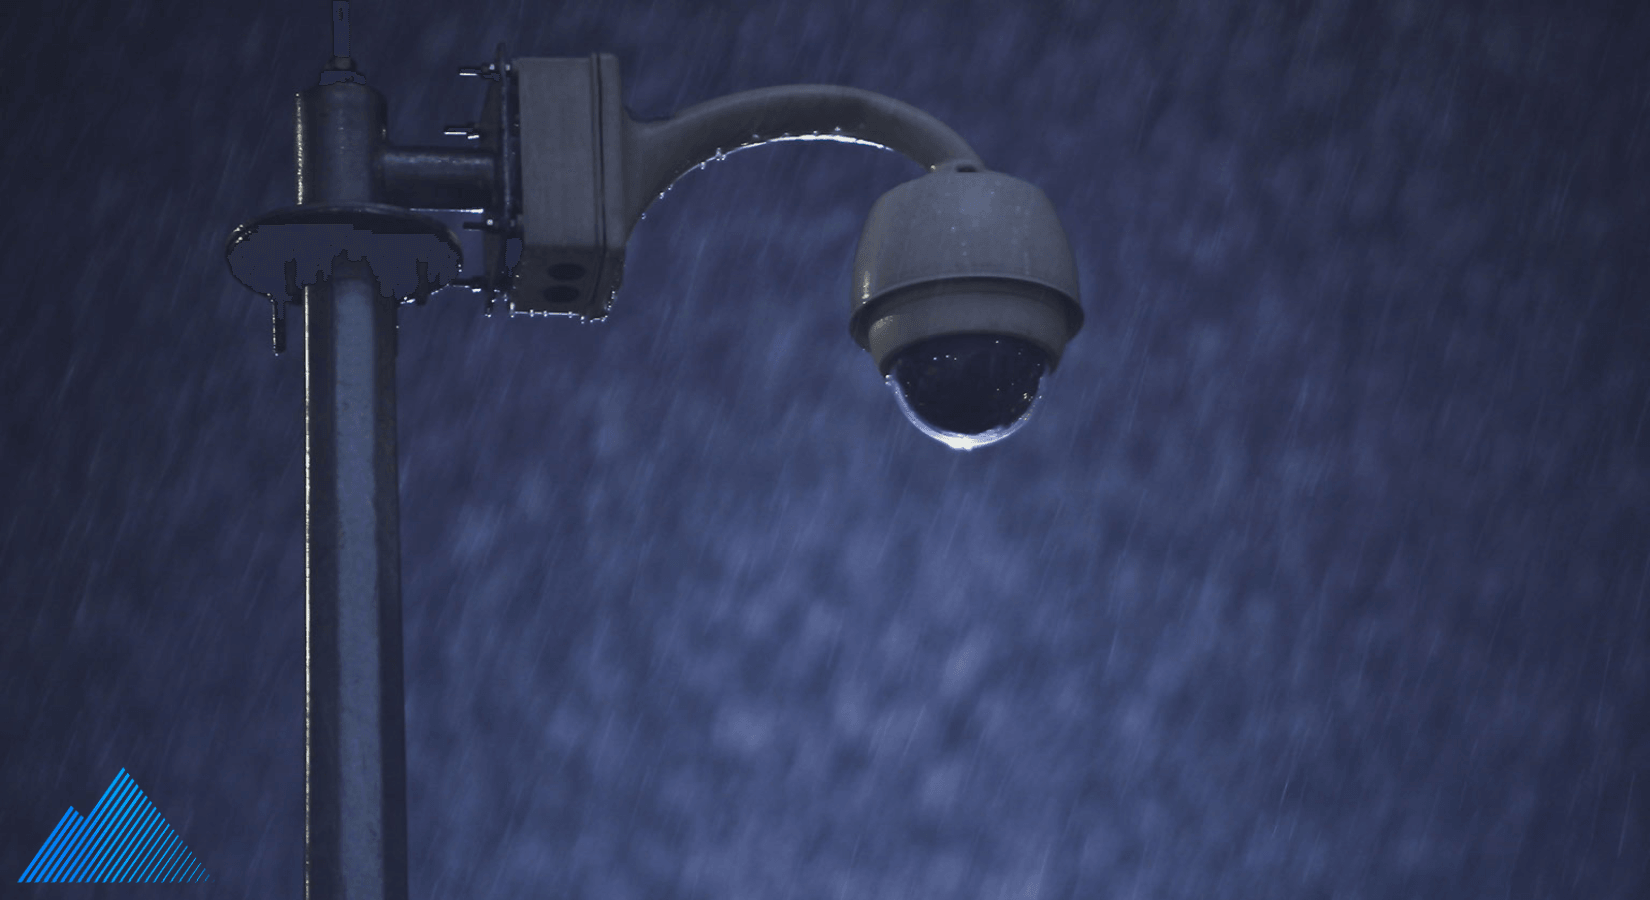 Dome security camera in heavy rain